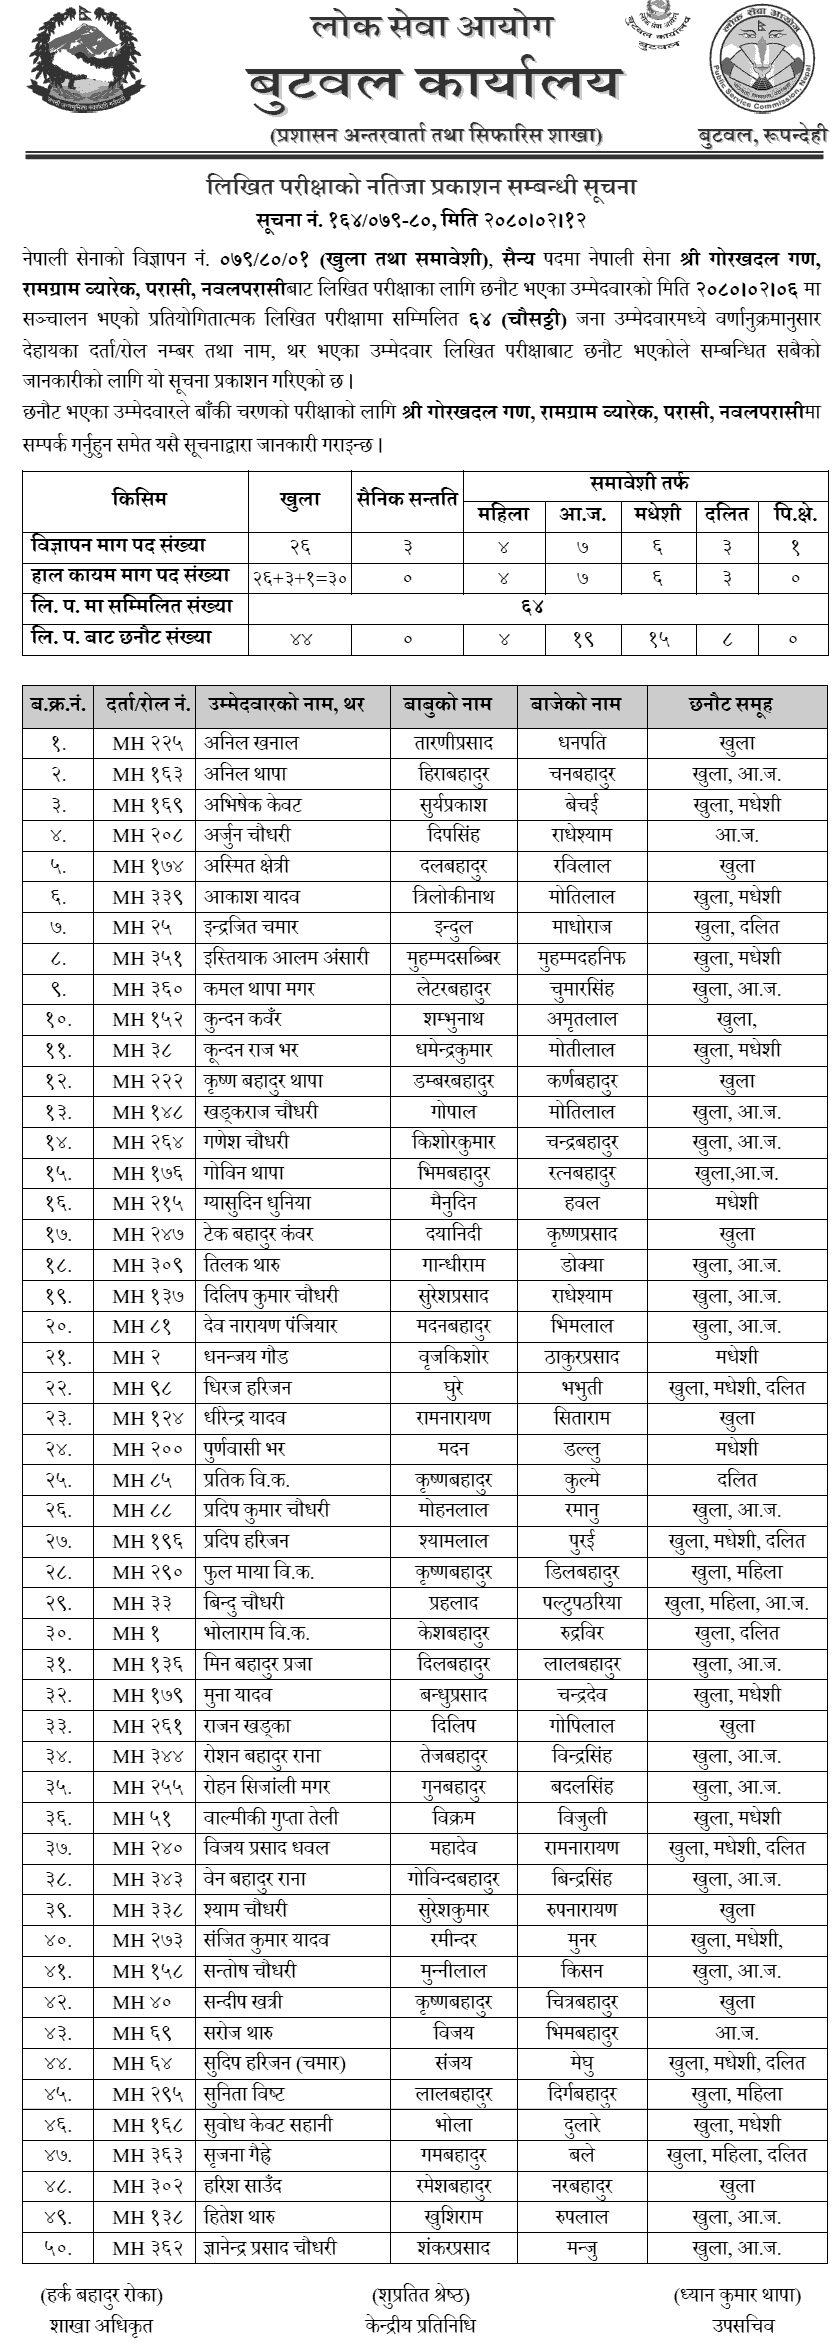 Nepal Army Sainya Post Written Exam Result 2080  Sarlahi,(Nawalparasi